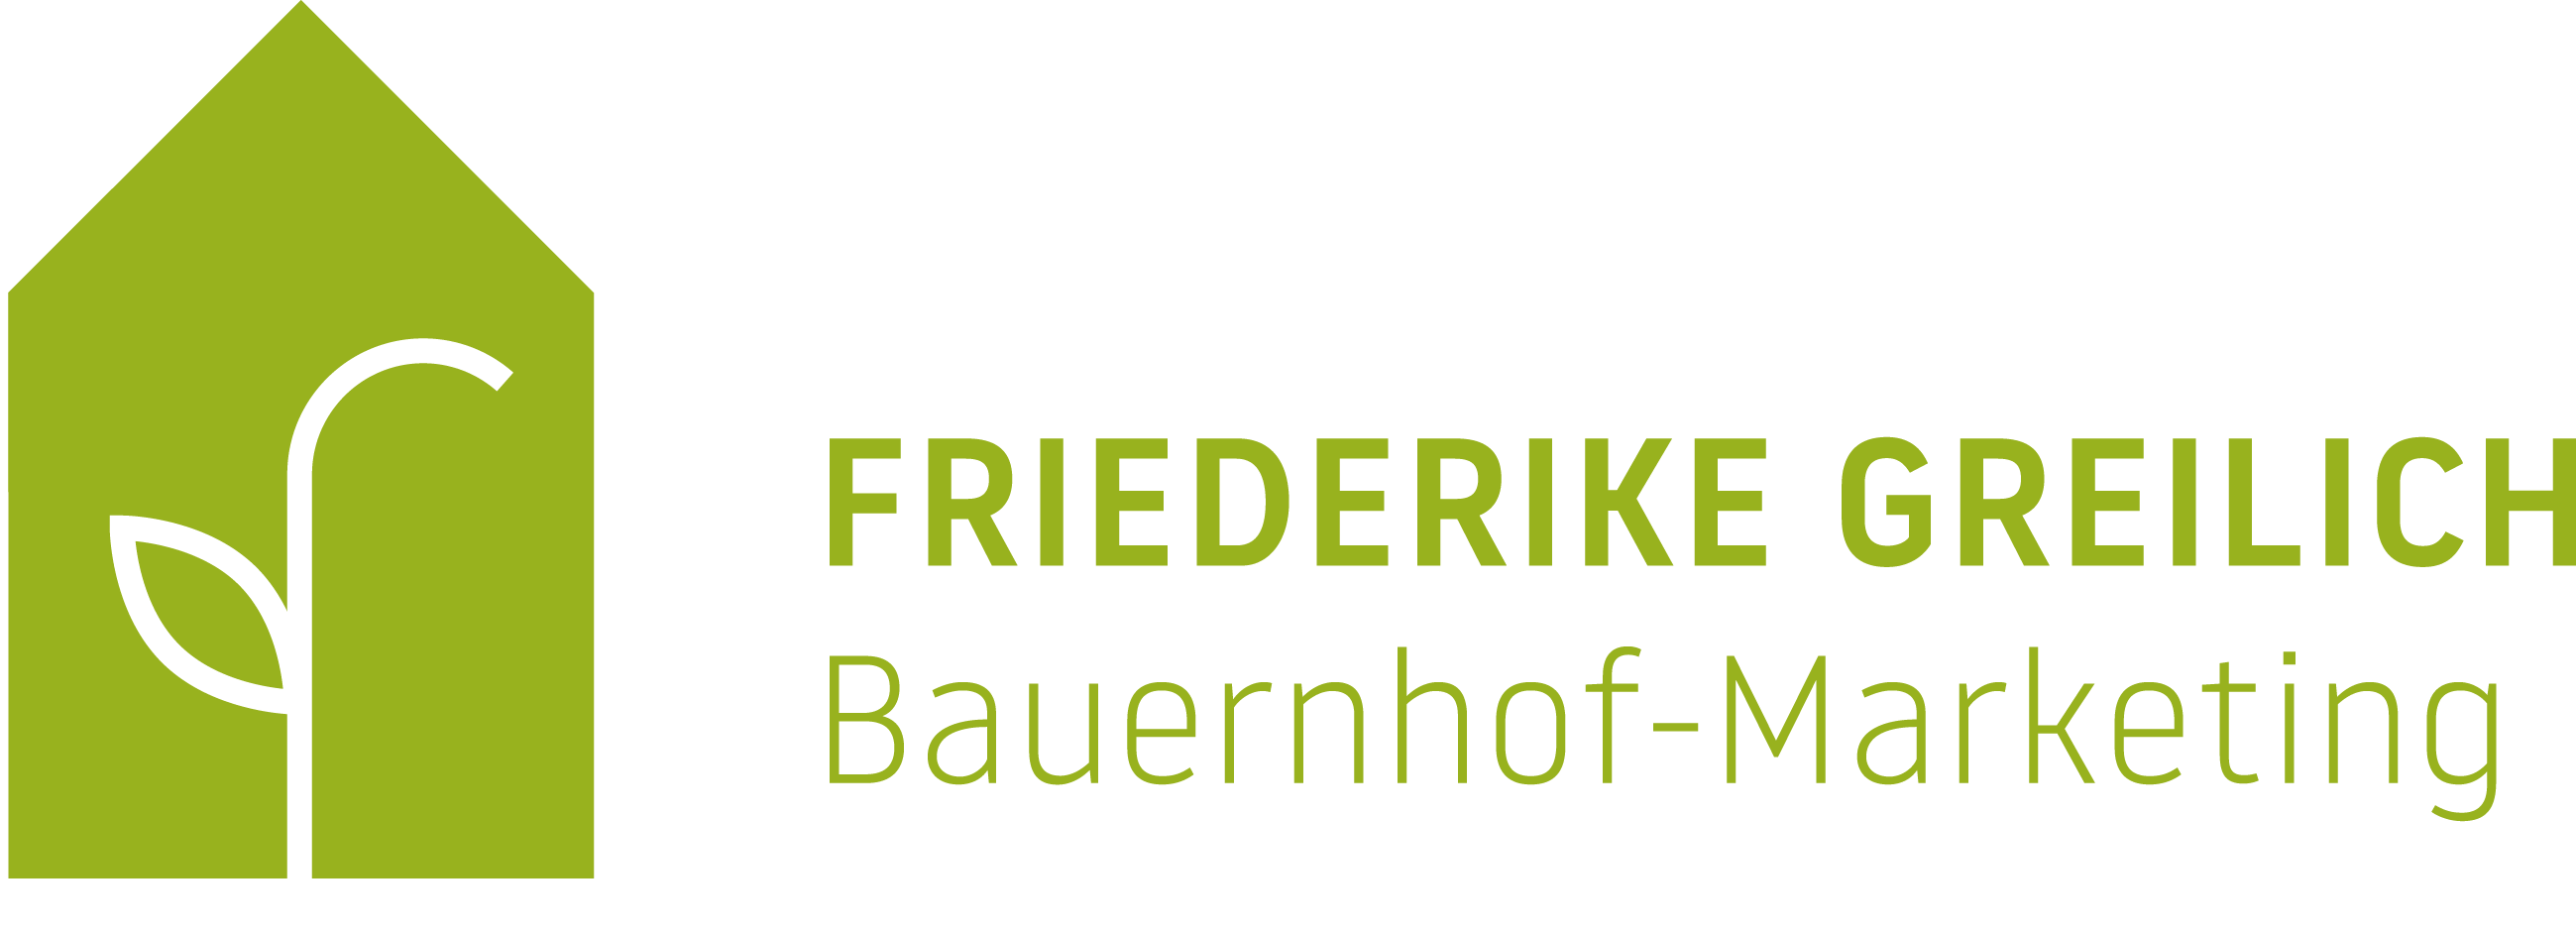 Friederike_Bauernhof_Marketing_Logo